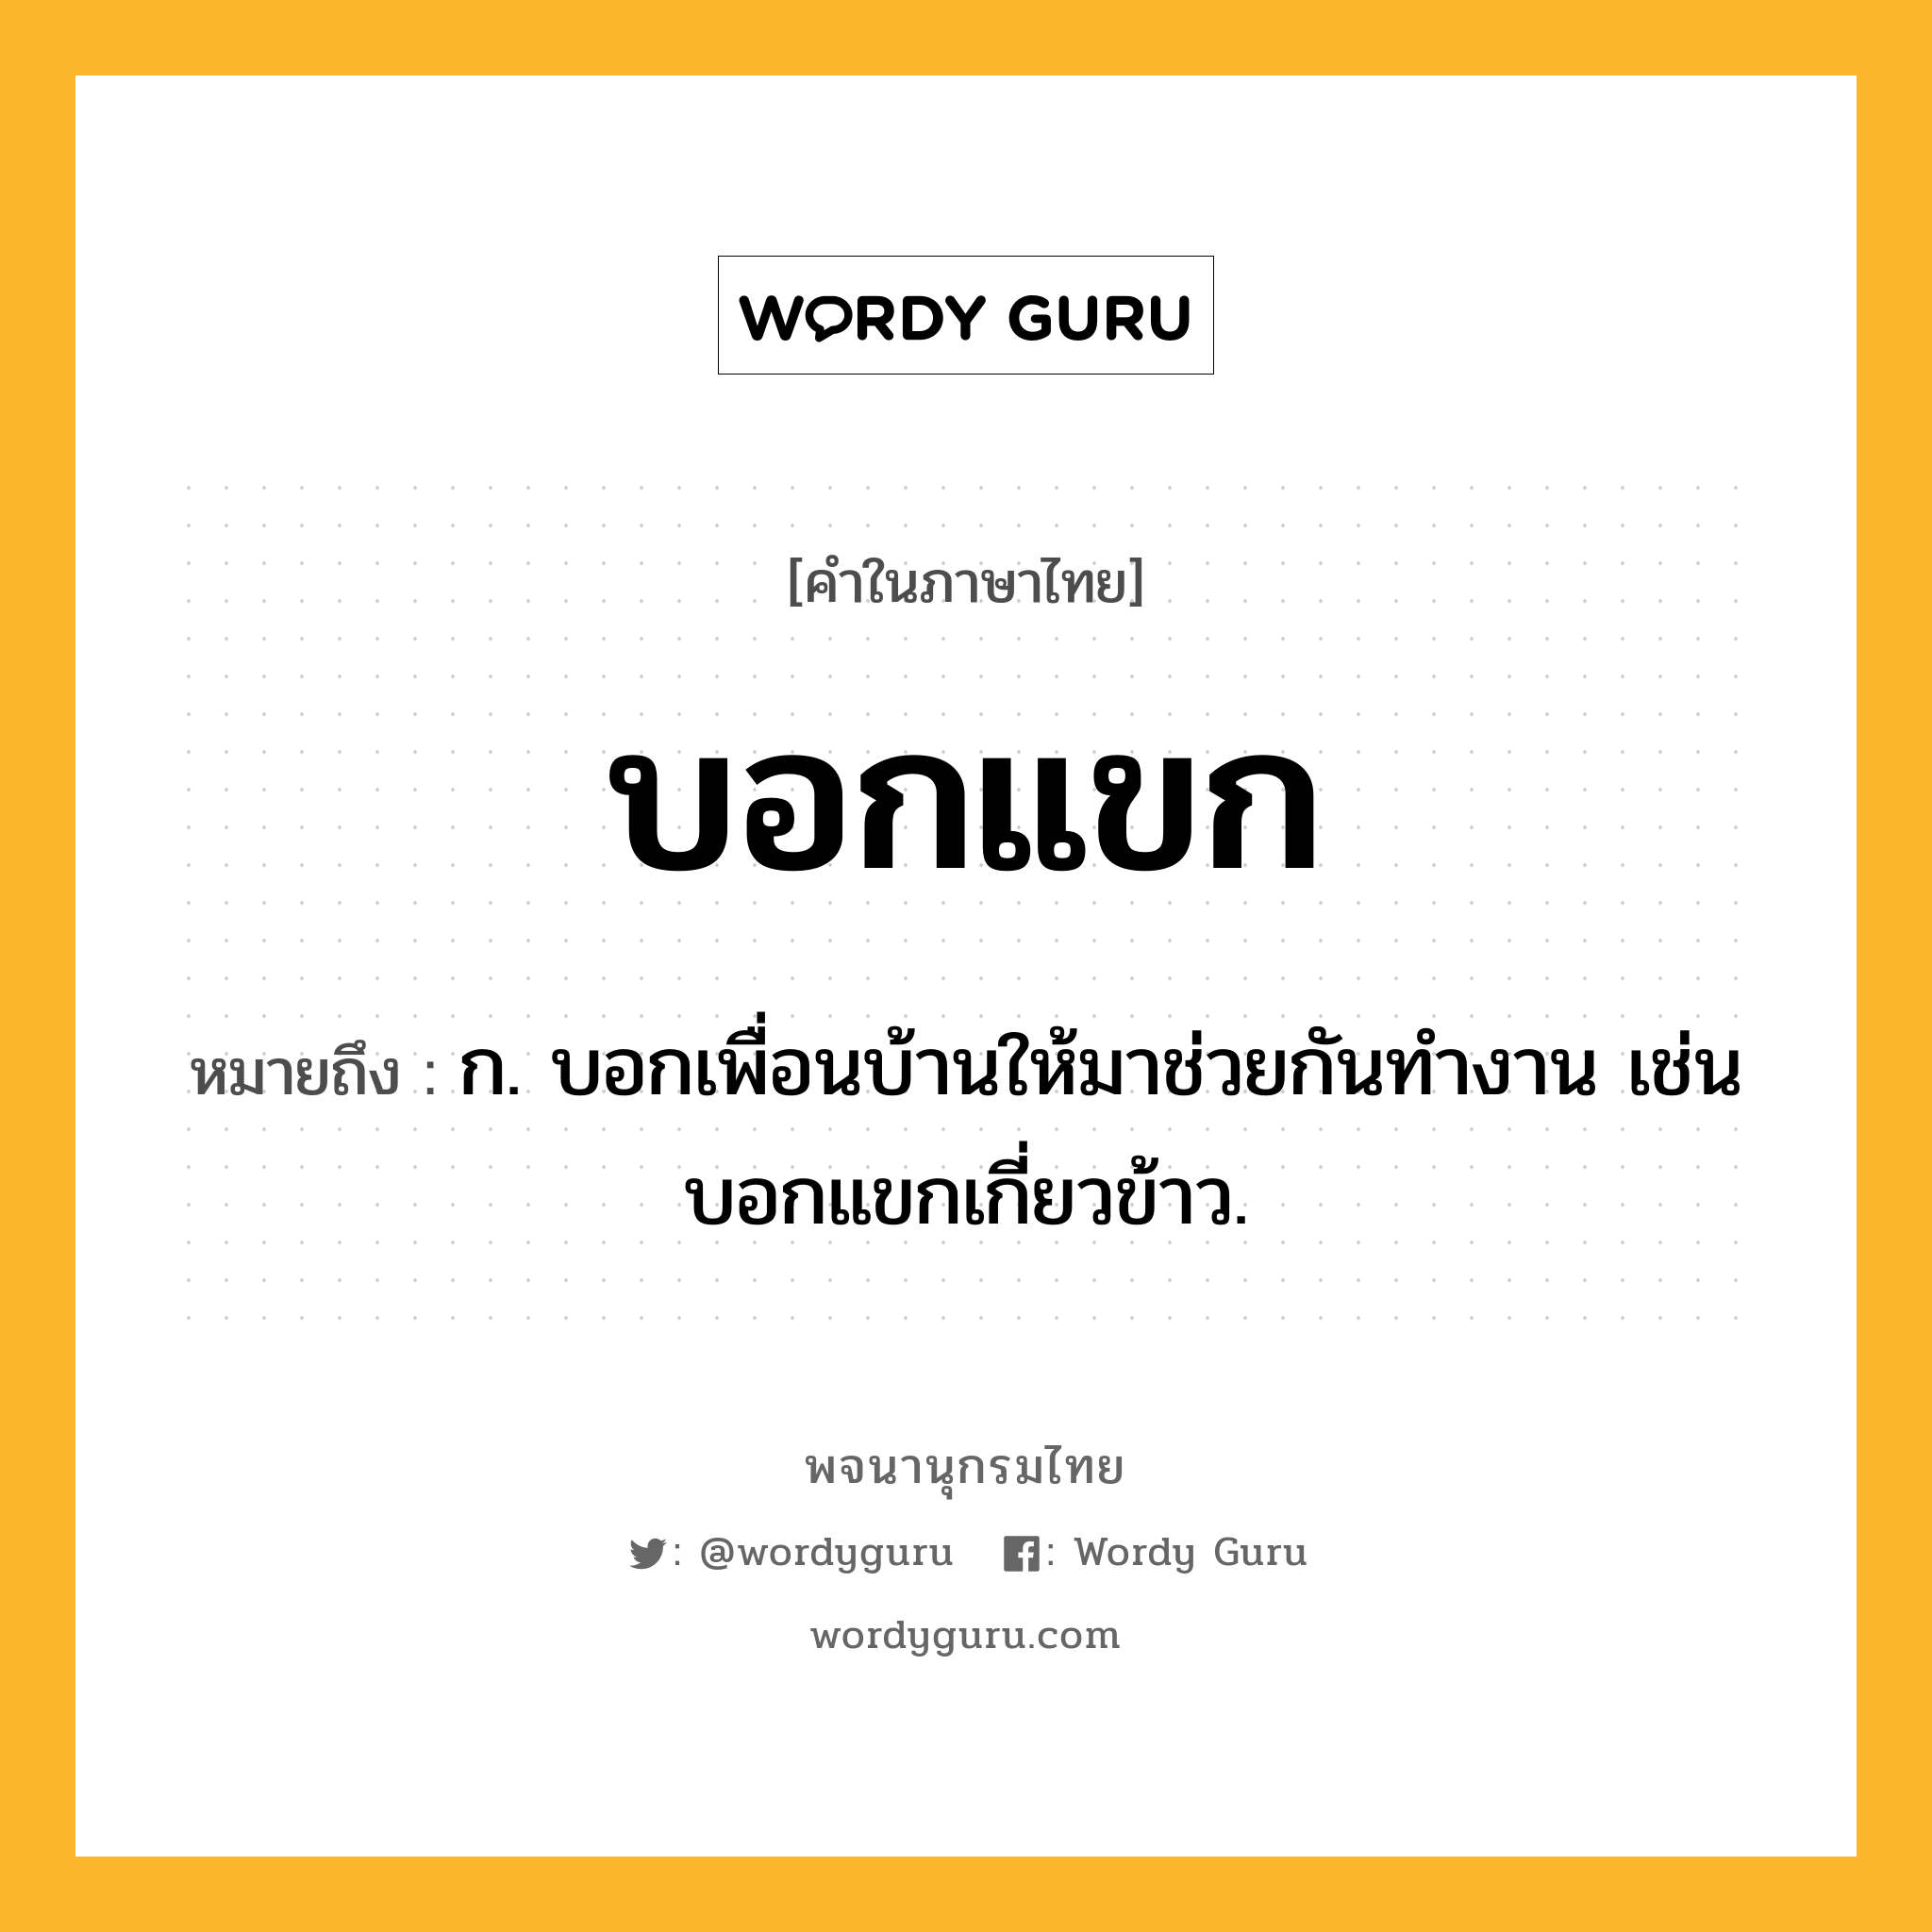 บอกแขก หมายถึงอะไร?, คำในภาษาไทย บอกแขก หมายถึง ก. บอกเพื่อนบ้านให้มาช่วยกันทํางาน เช่น บอกแขกเกี่ยวข้าว.